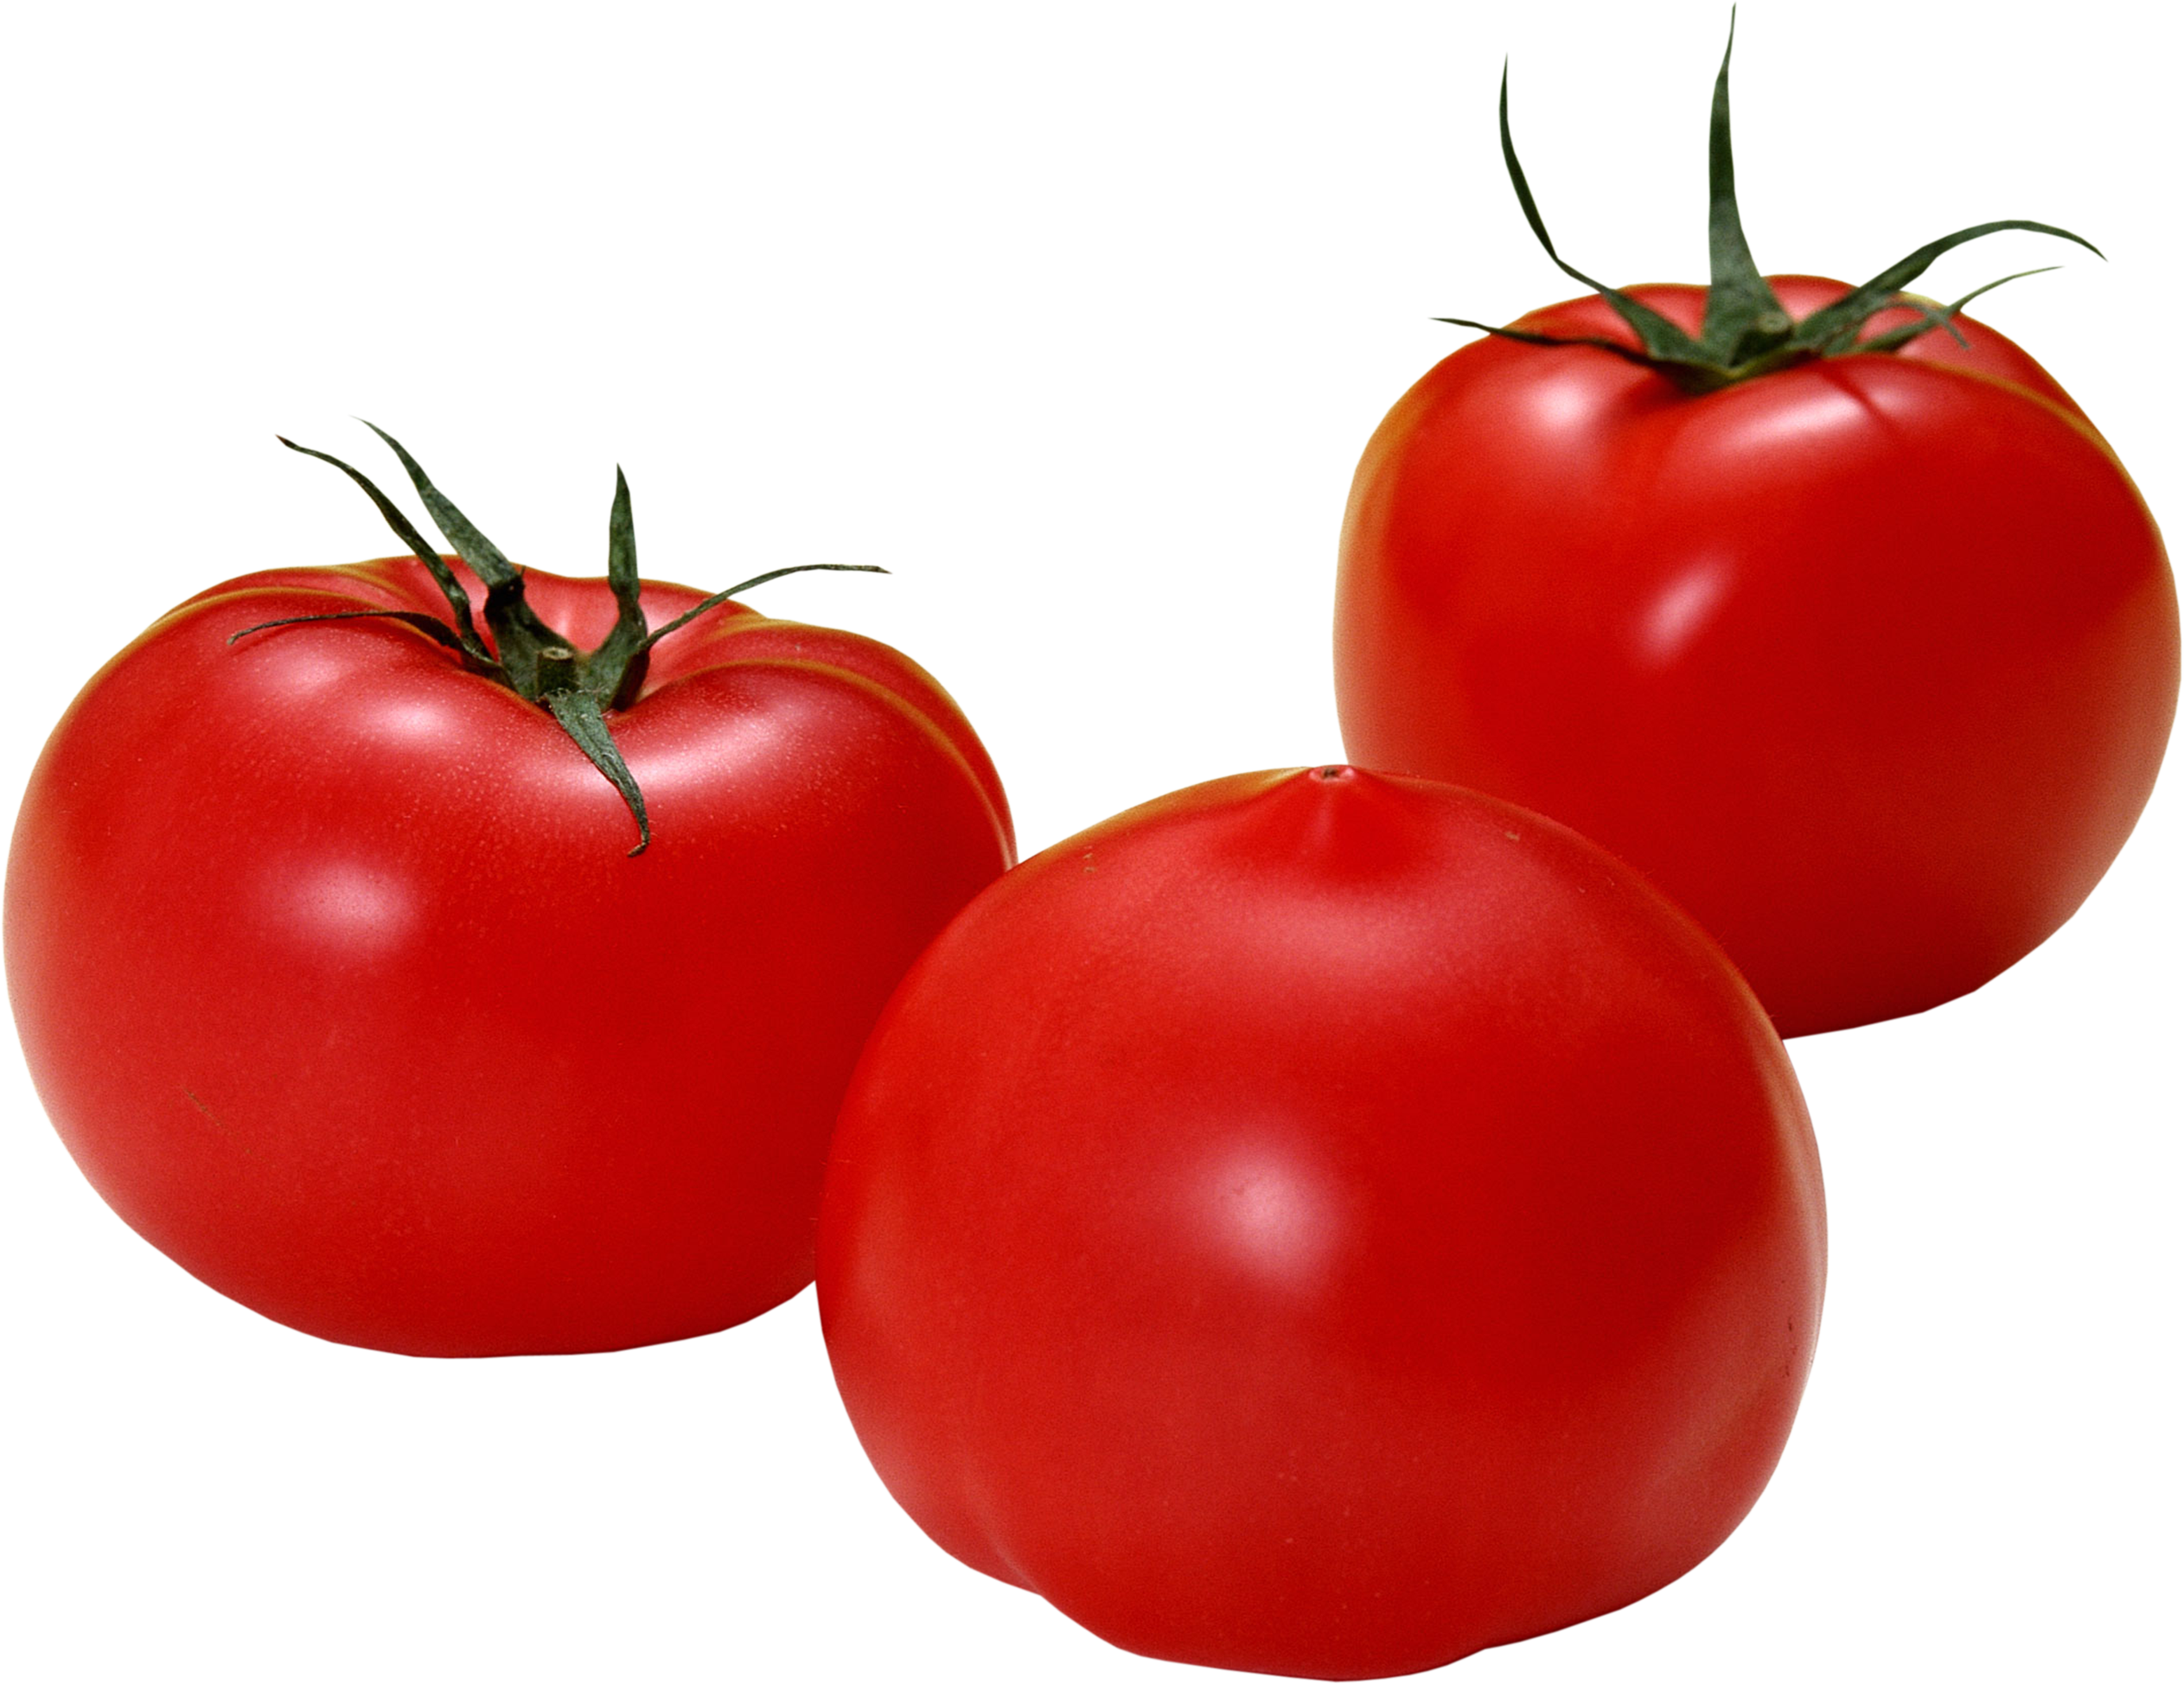 3 buah tomat merah